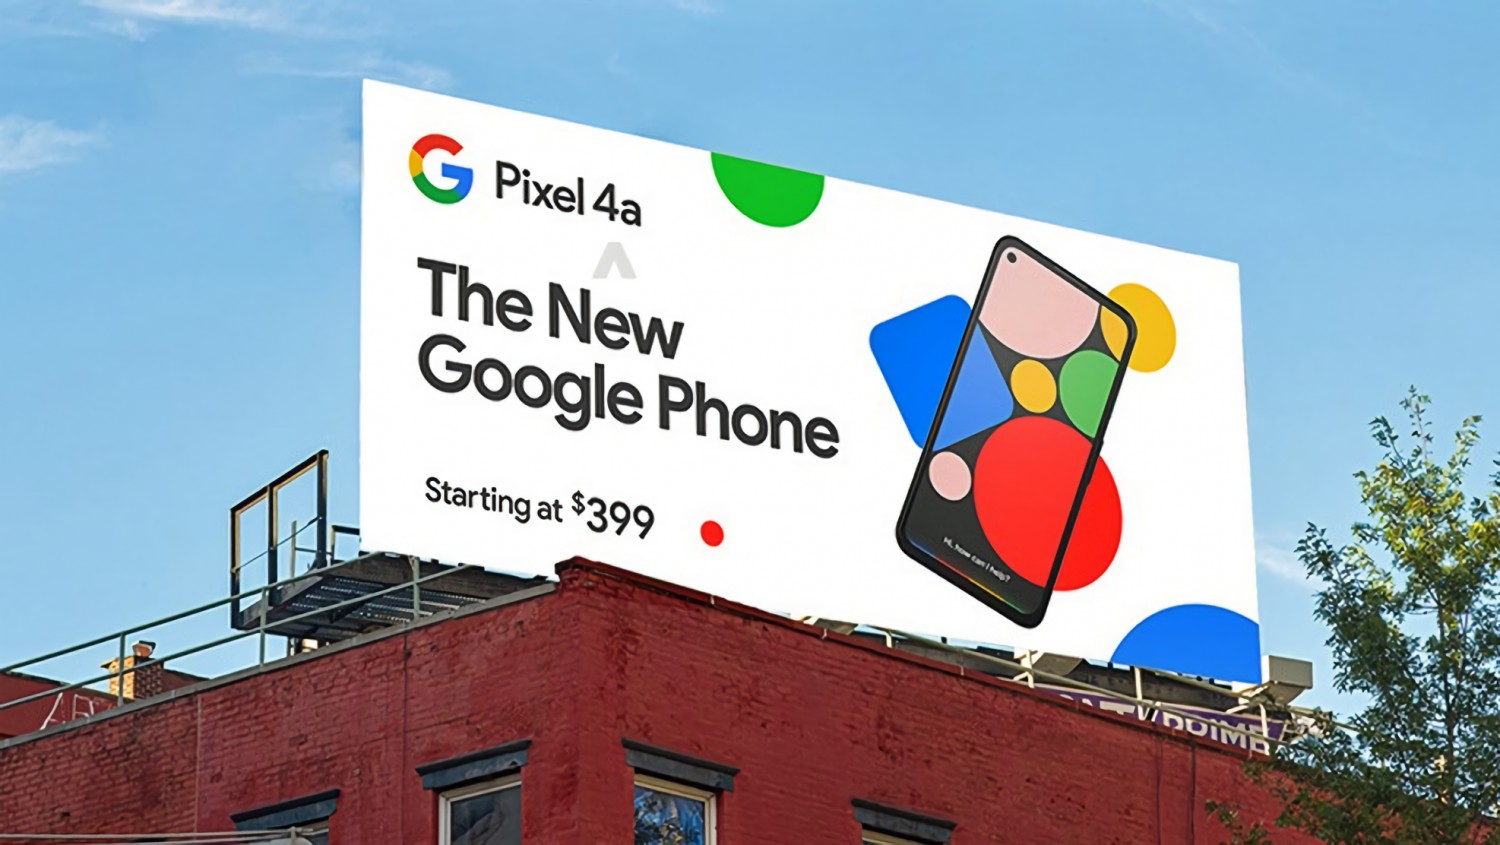 Evleaks опубликовал фото баннеров с рекламой смартфона Google Pixel 4a